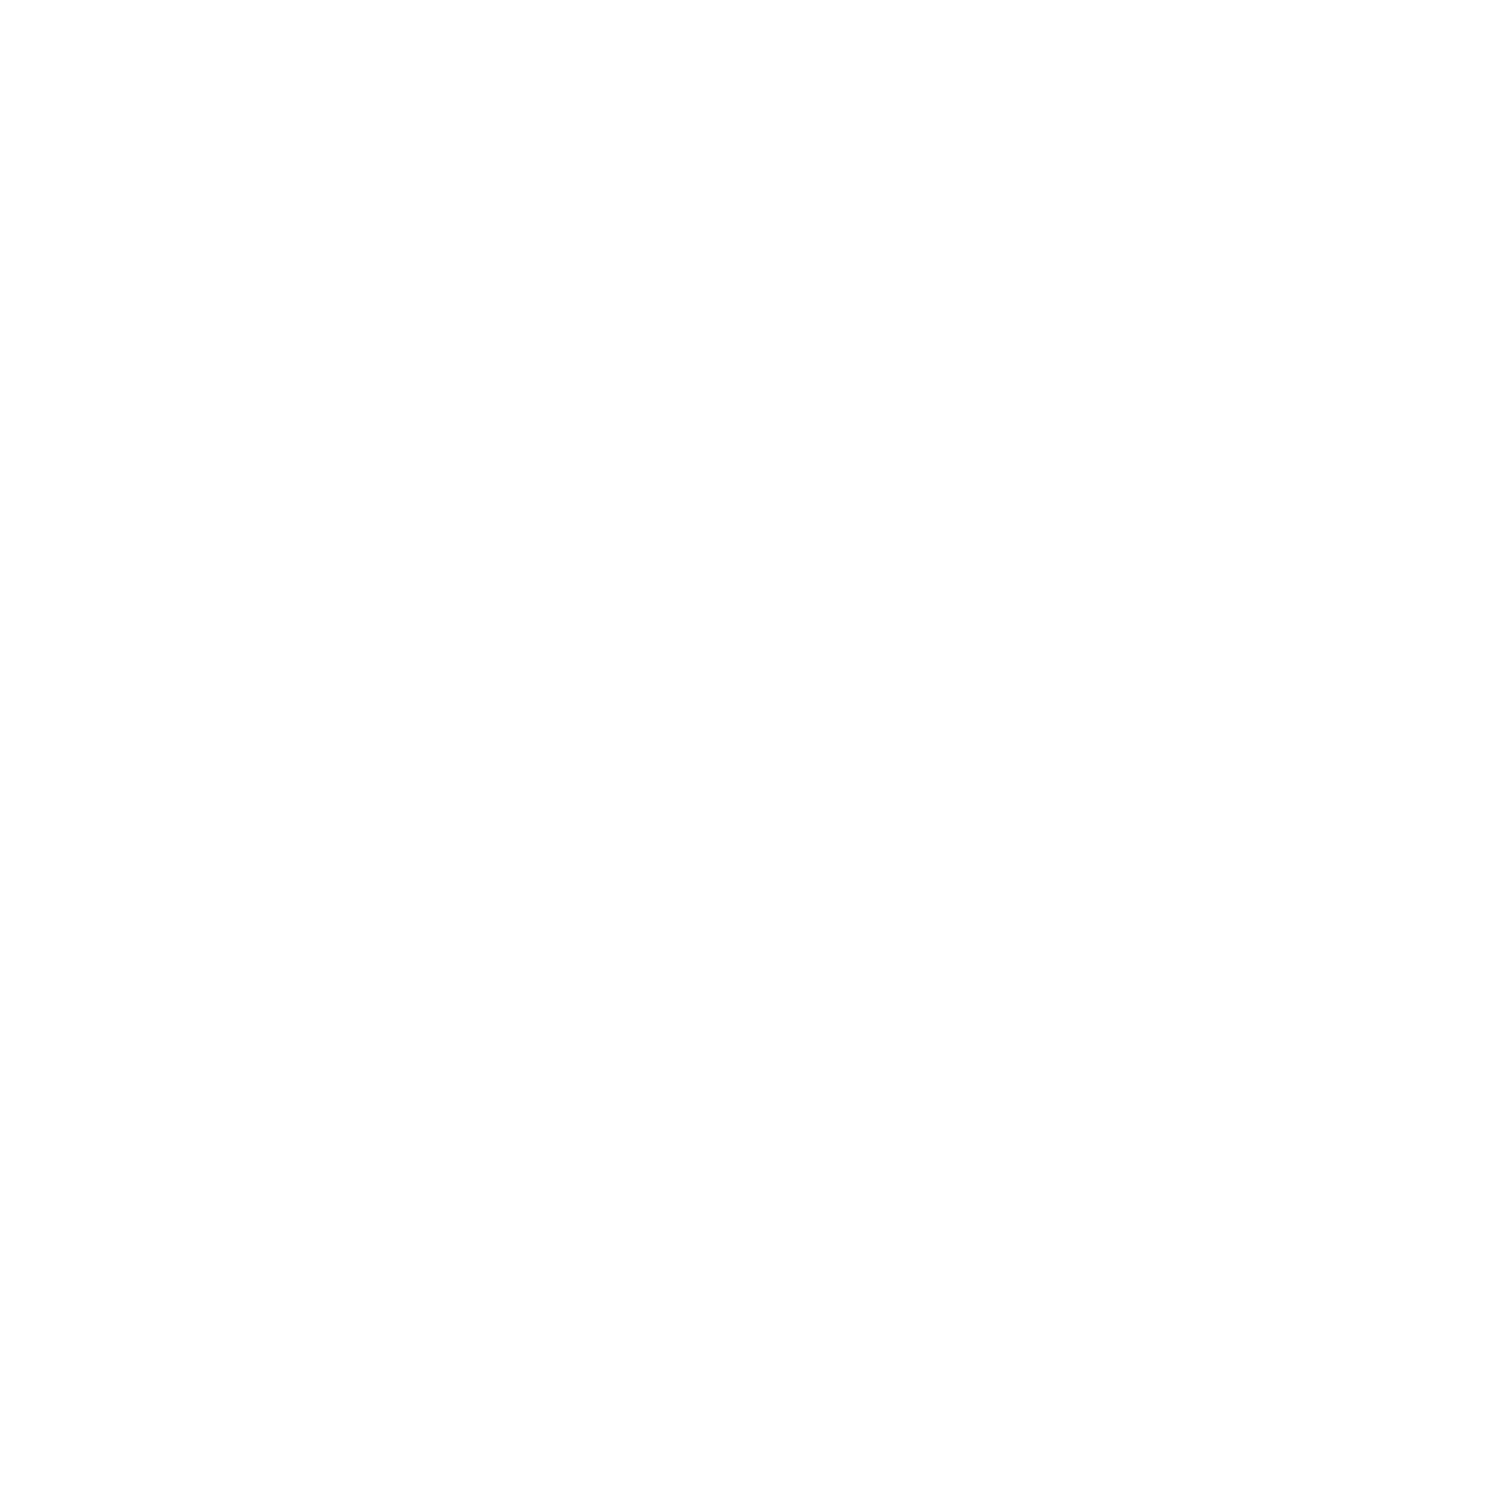 Royal Bank of Scotland logo for dark backgrounds (transparent PNG)